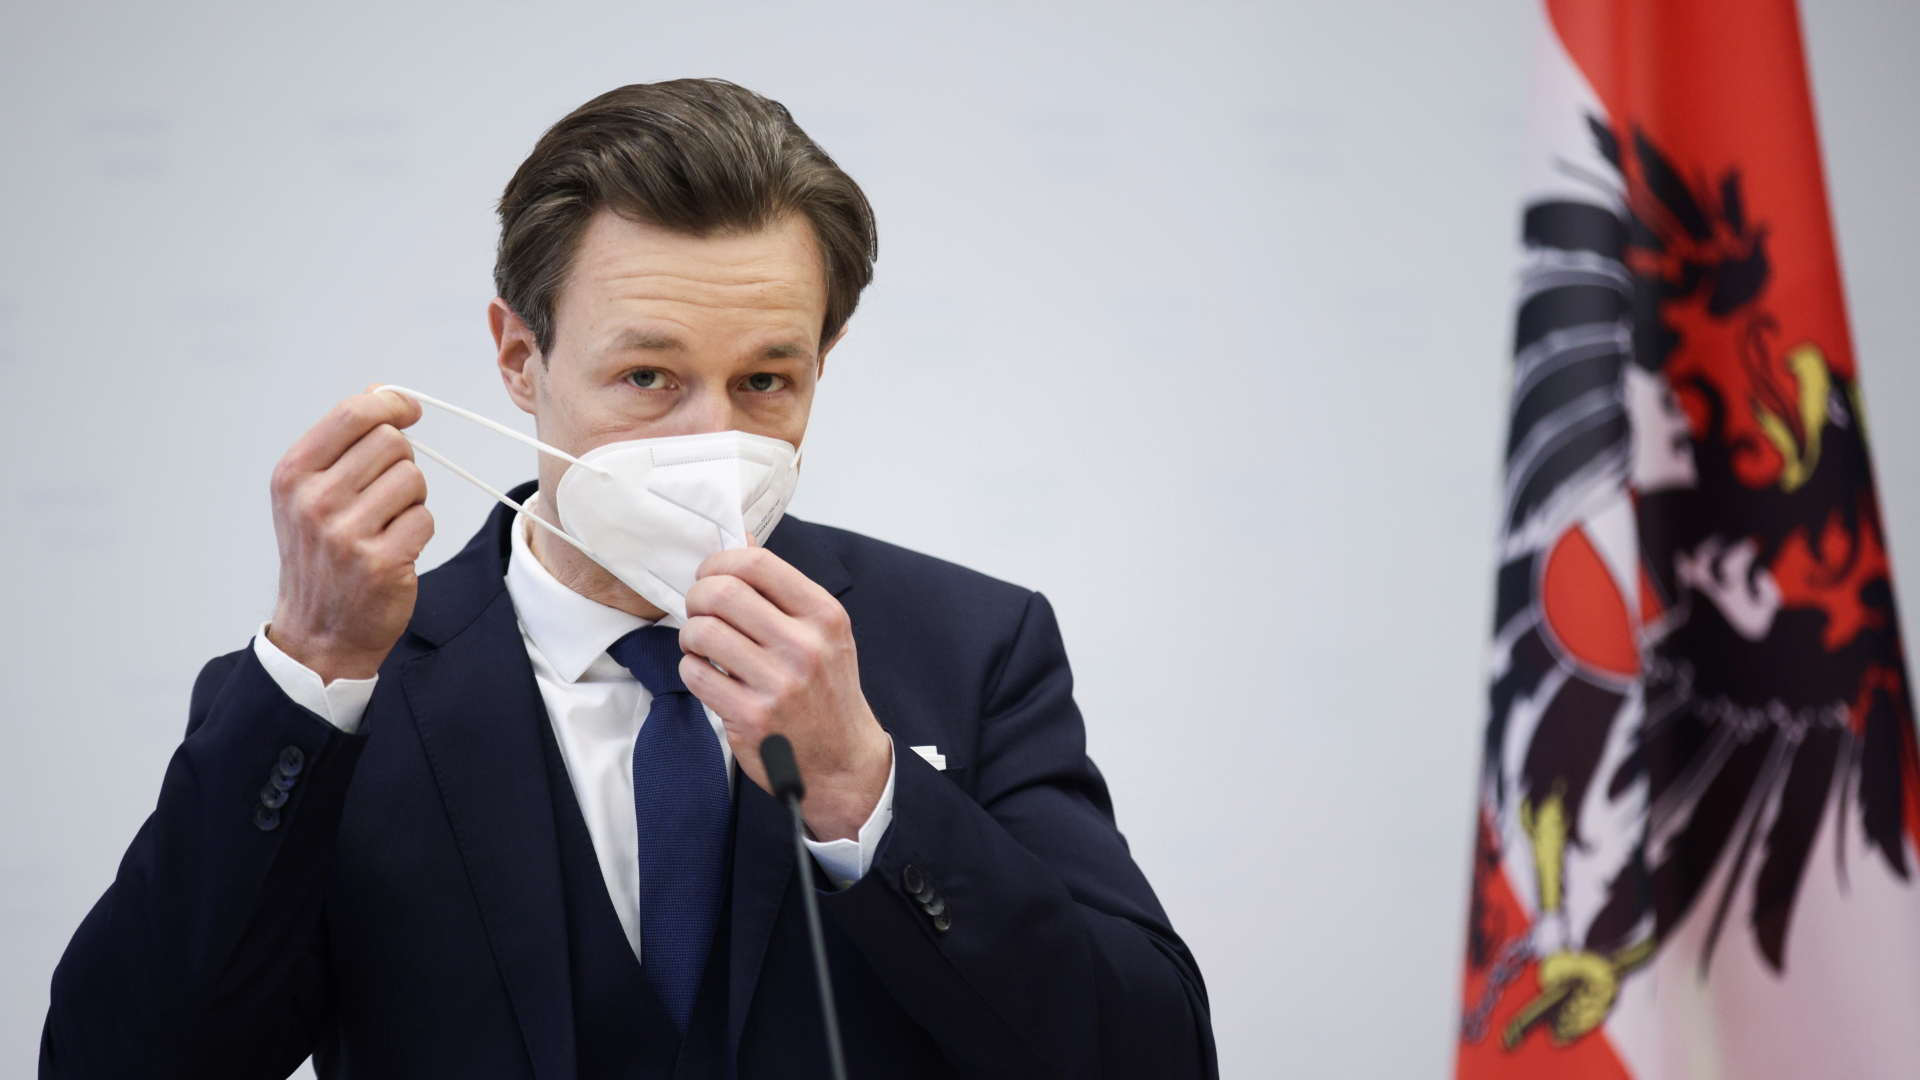 Der österreichische Finanzminister Blümel nimmt bei einer Pressekonferenz seine Schutzmaske ab.